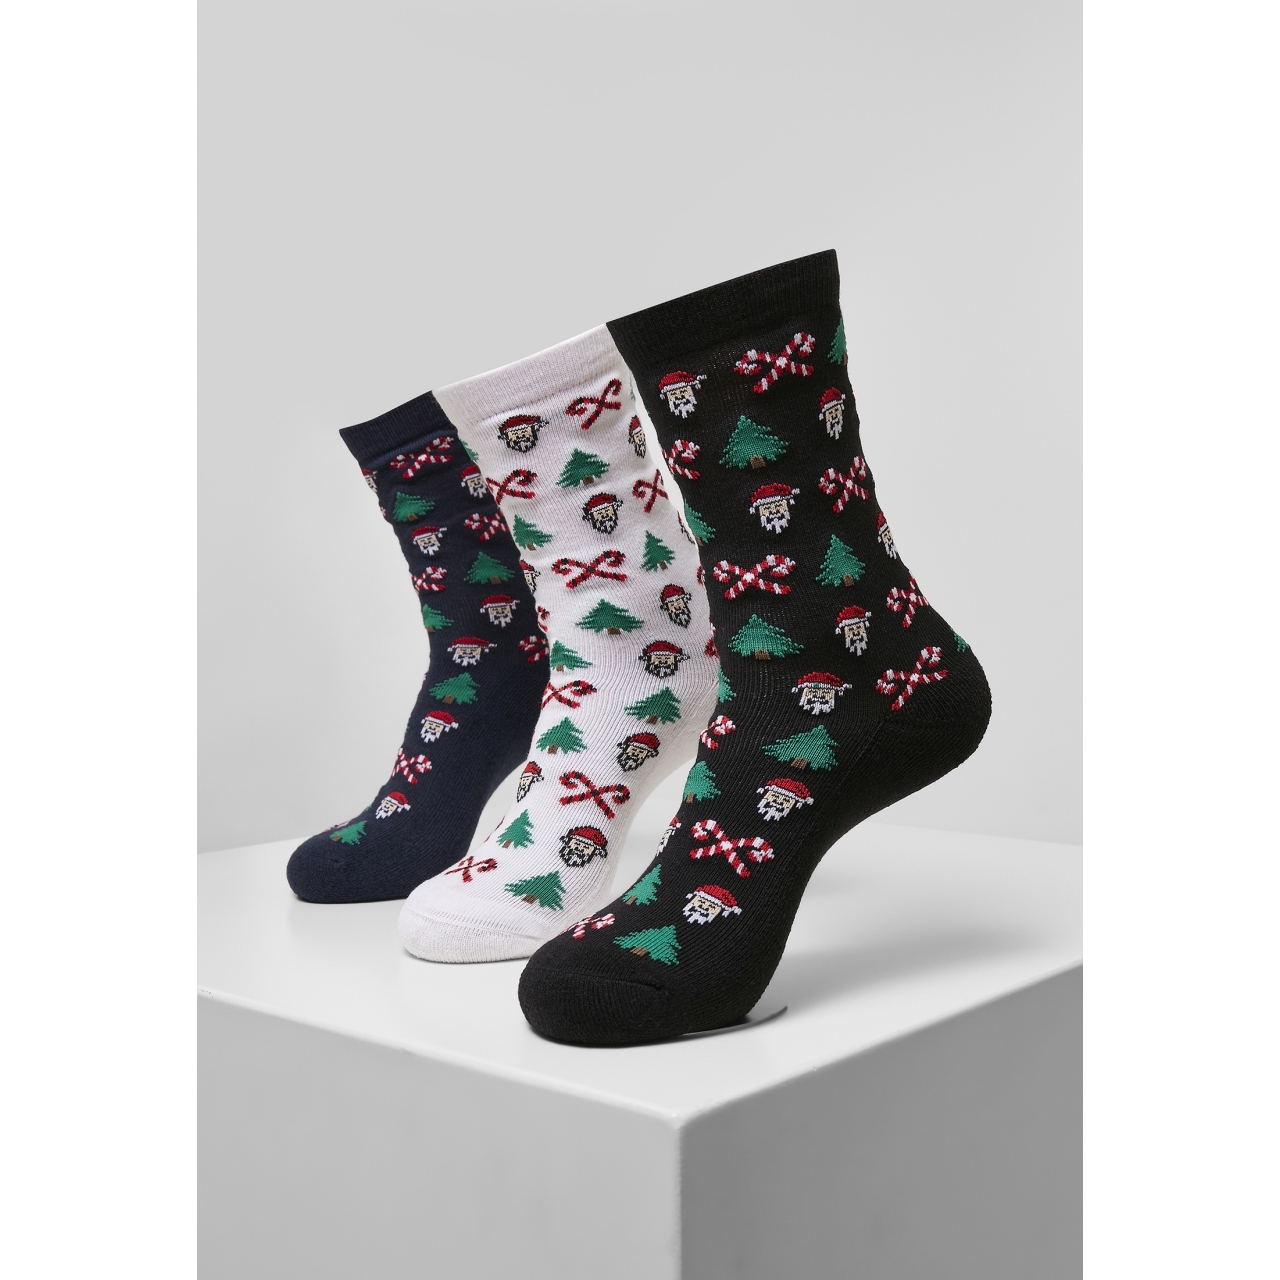 Ponožky Urban Classics Grumpy Santa Christmas 3 páry (navy, bílé, černéú, 35-38